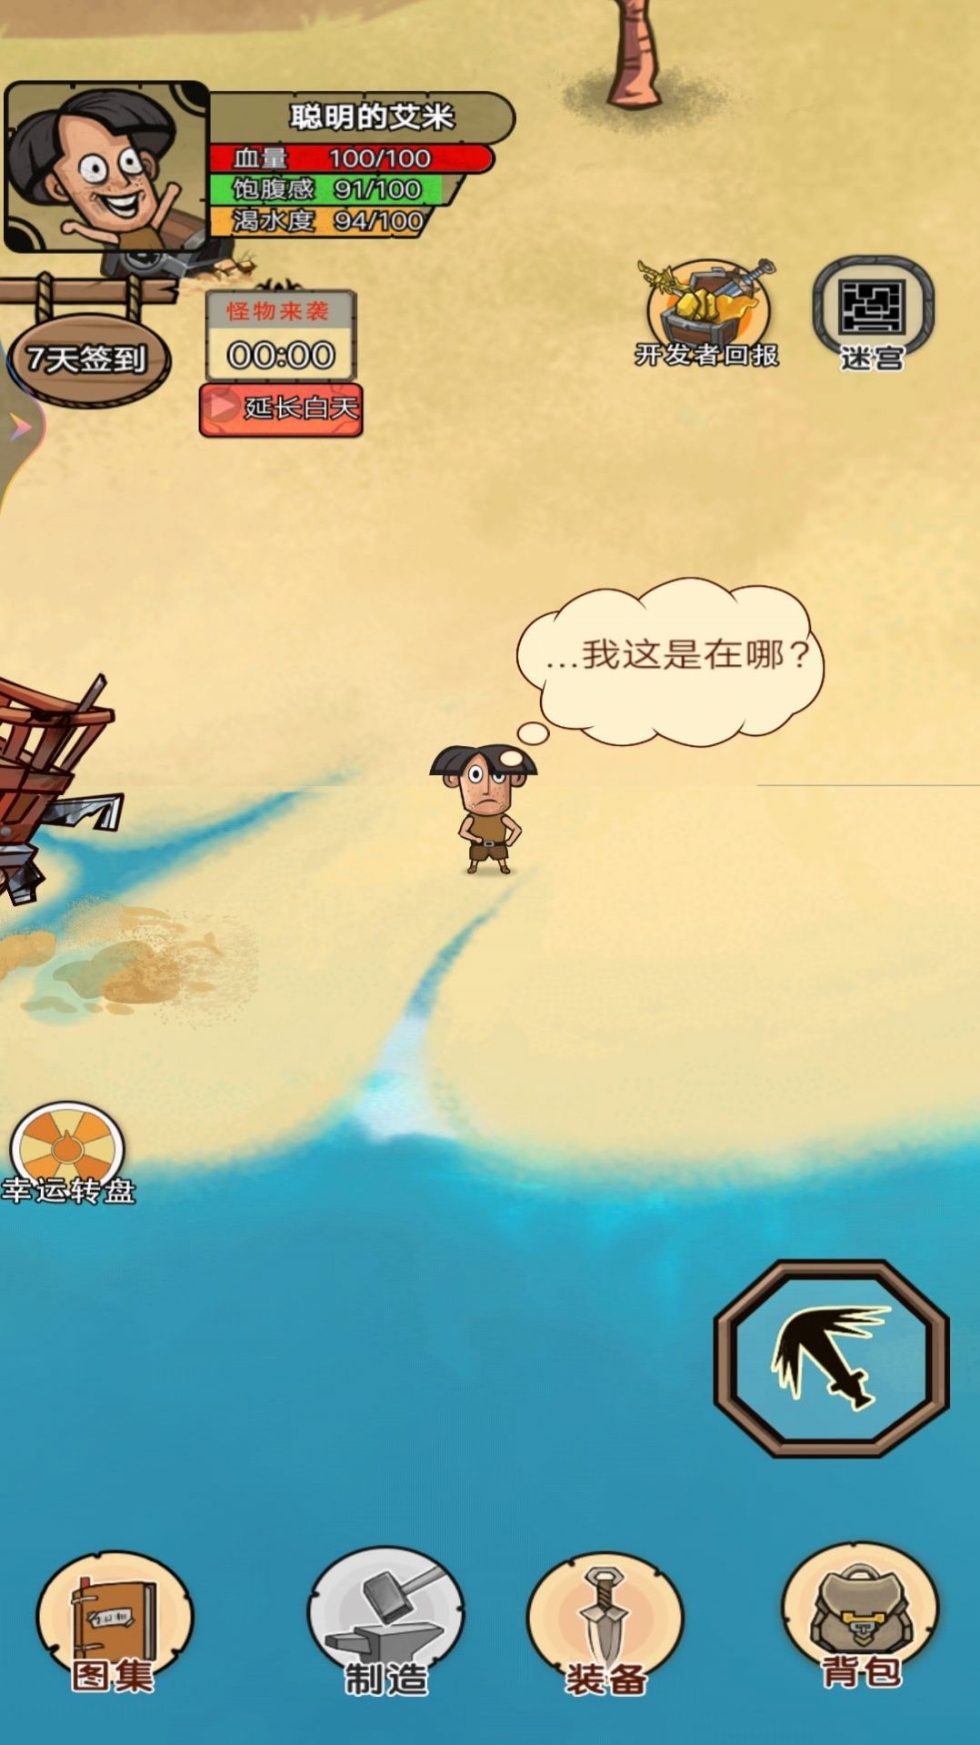 荒岛探险求生游戏下载最新版 v1截图1